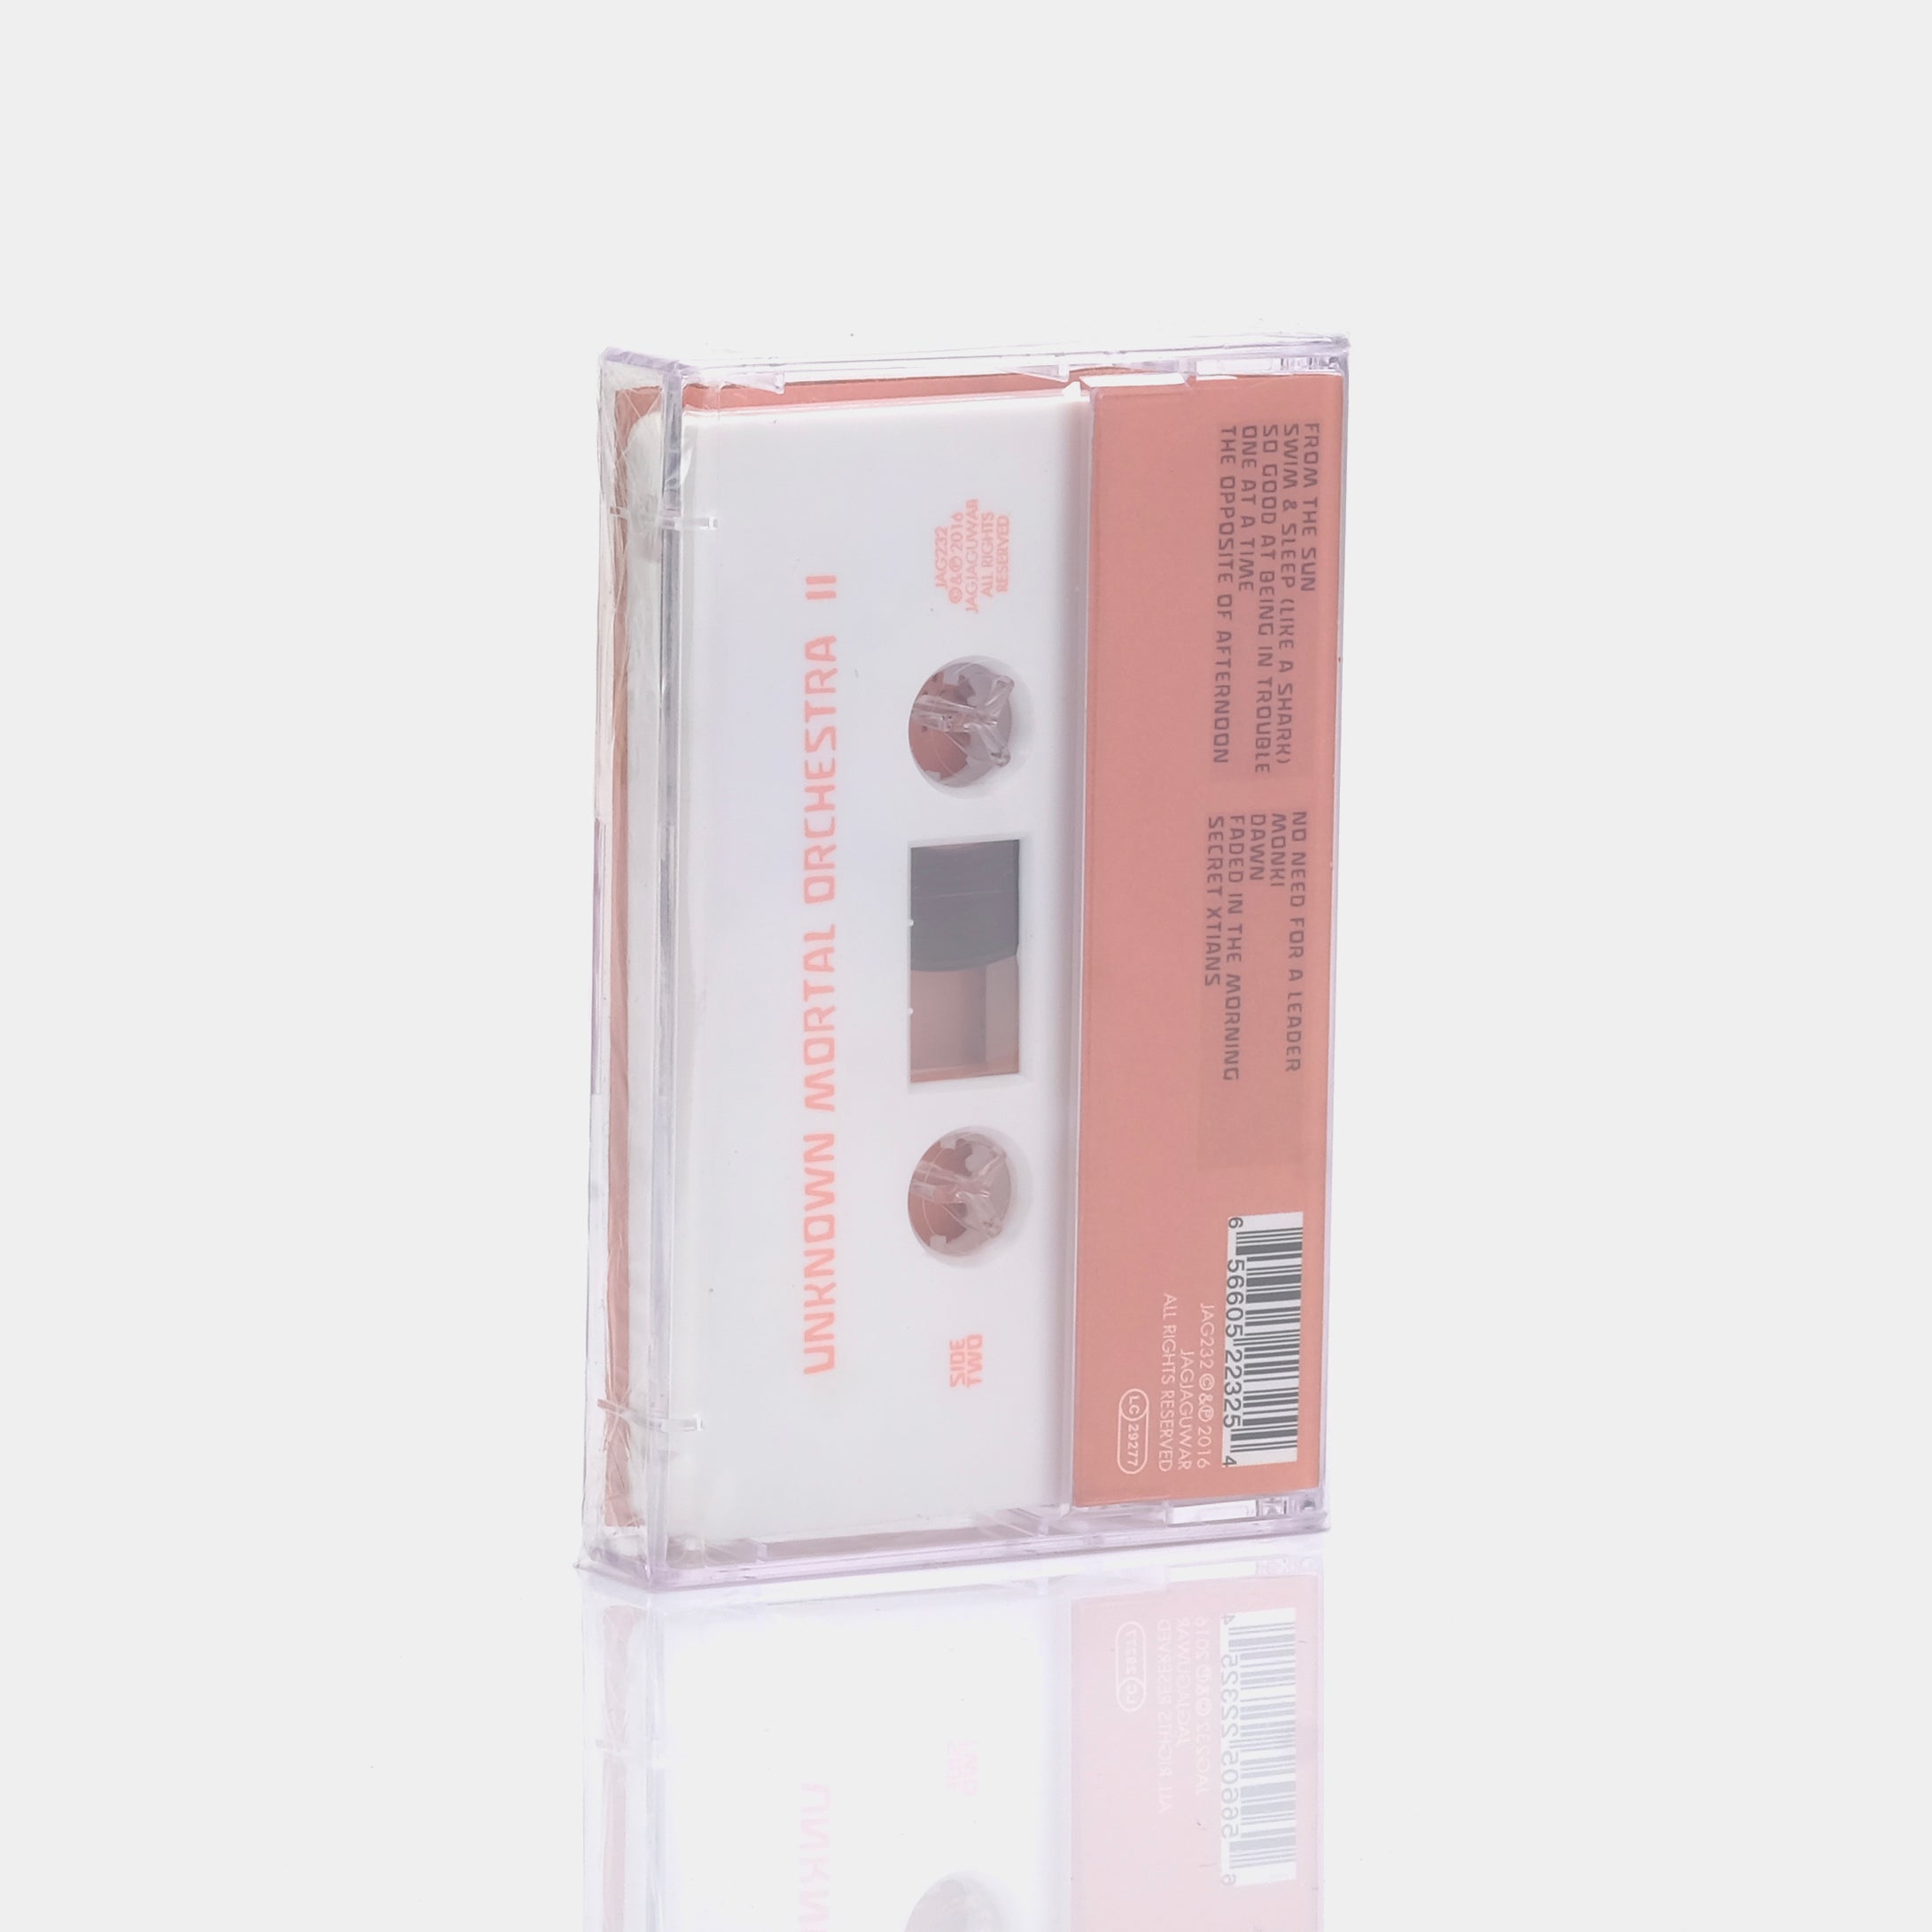 Unknown Mortal Orchestra - II Cassette Tape